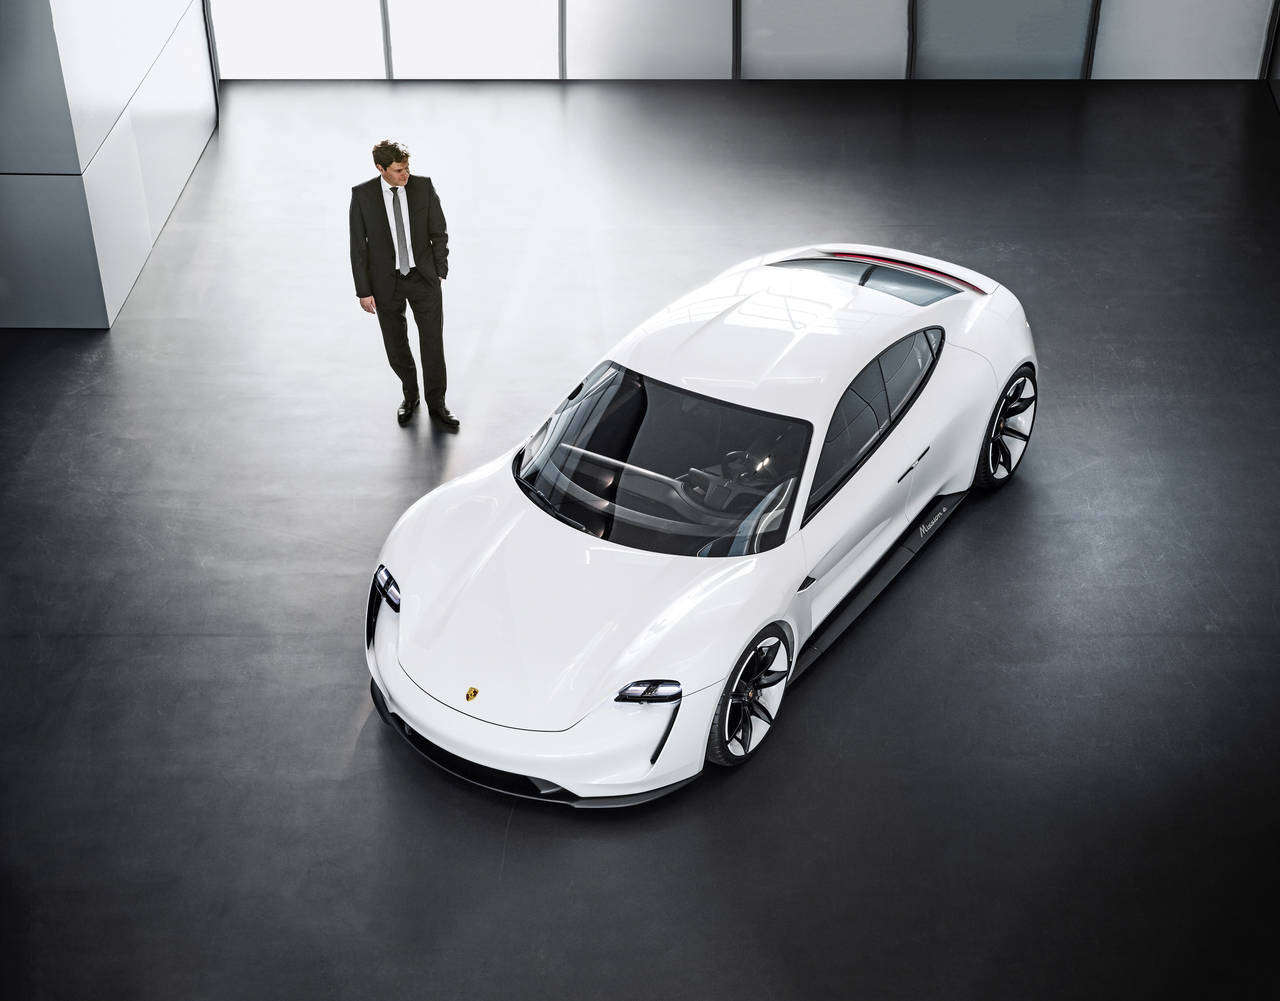 BILLIG-PORSCHE: Det kan se ut som Porsches kommende elbil vil bli deres billigste modell i Norge. FOTO: Produsenten /